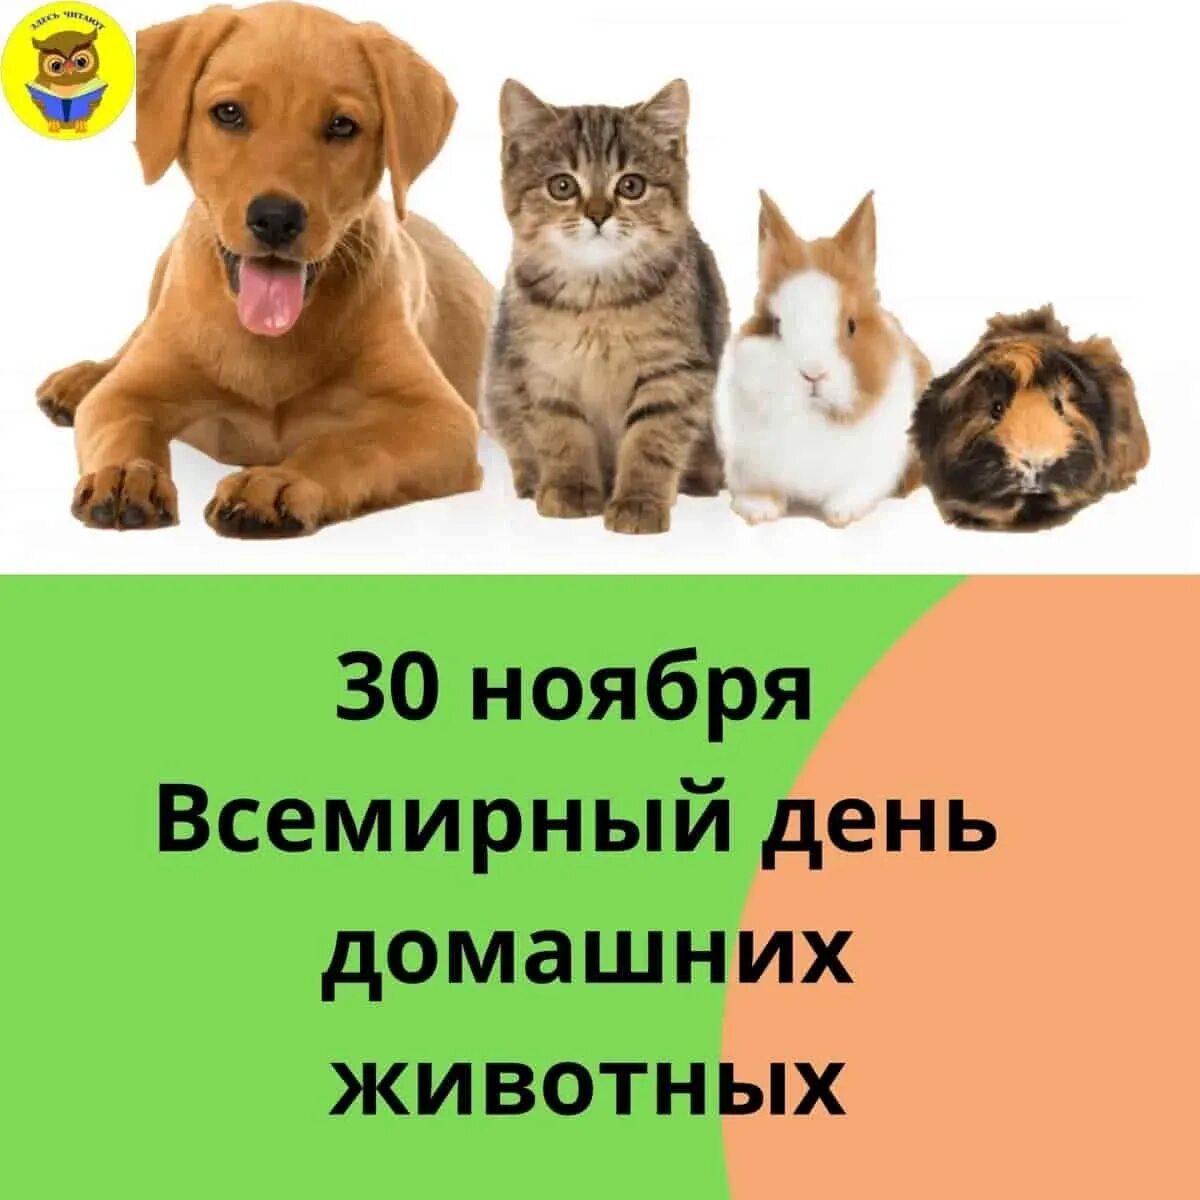 Всемирный день домашних животных. Всемирный день домашних животных 30 ноября. День домашних животных картинки. День домашних животных открытки.